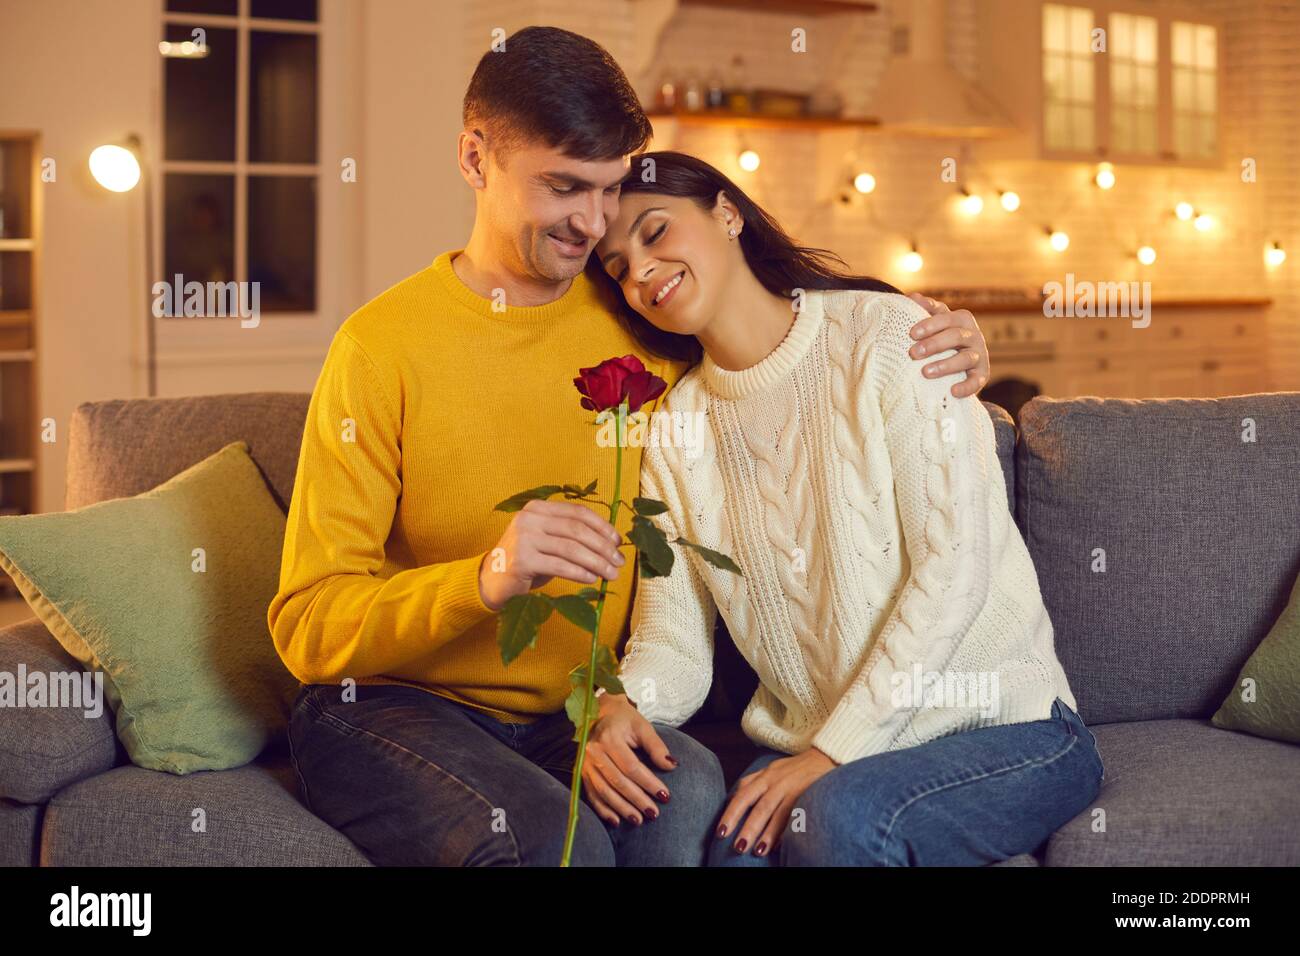 Jeune homme souriant petit ami donnant la rose rouge comme symbole j'adore sa jolie petite amie sur le canapé à la maison Banque D'Images